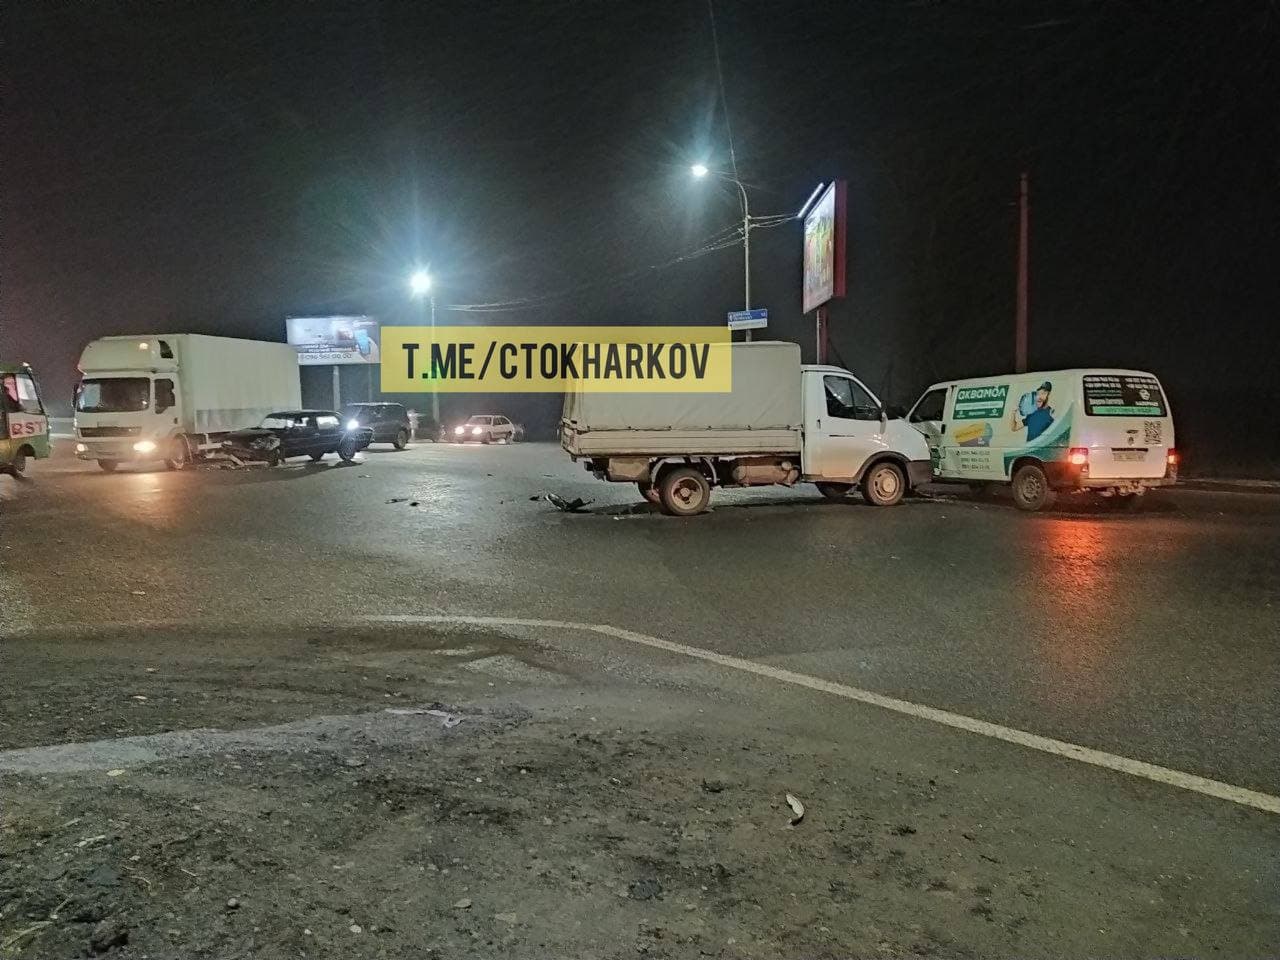 ДТП Харьков: Пенсионер на Жигулях устроил тройную аварию на окружной при выезде с Героев Труда